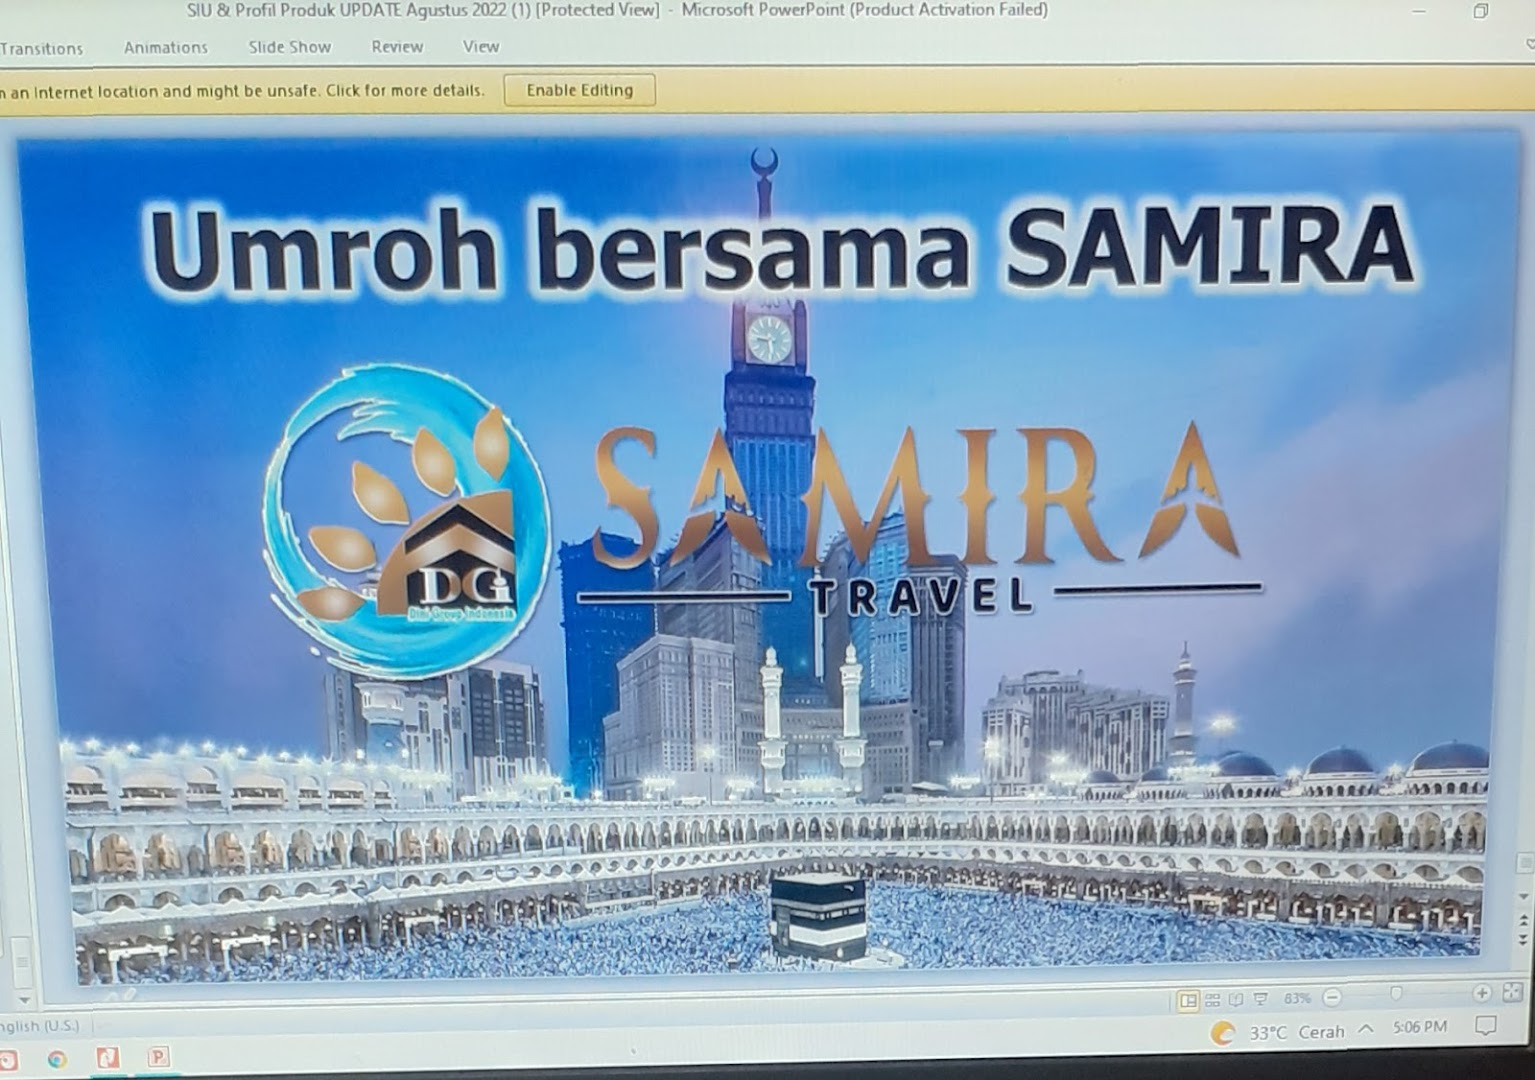 Gambar Samira Travel